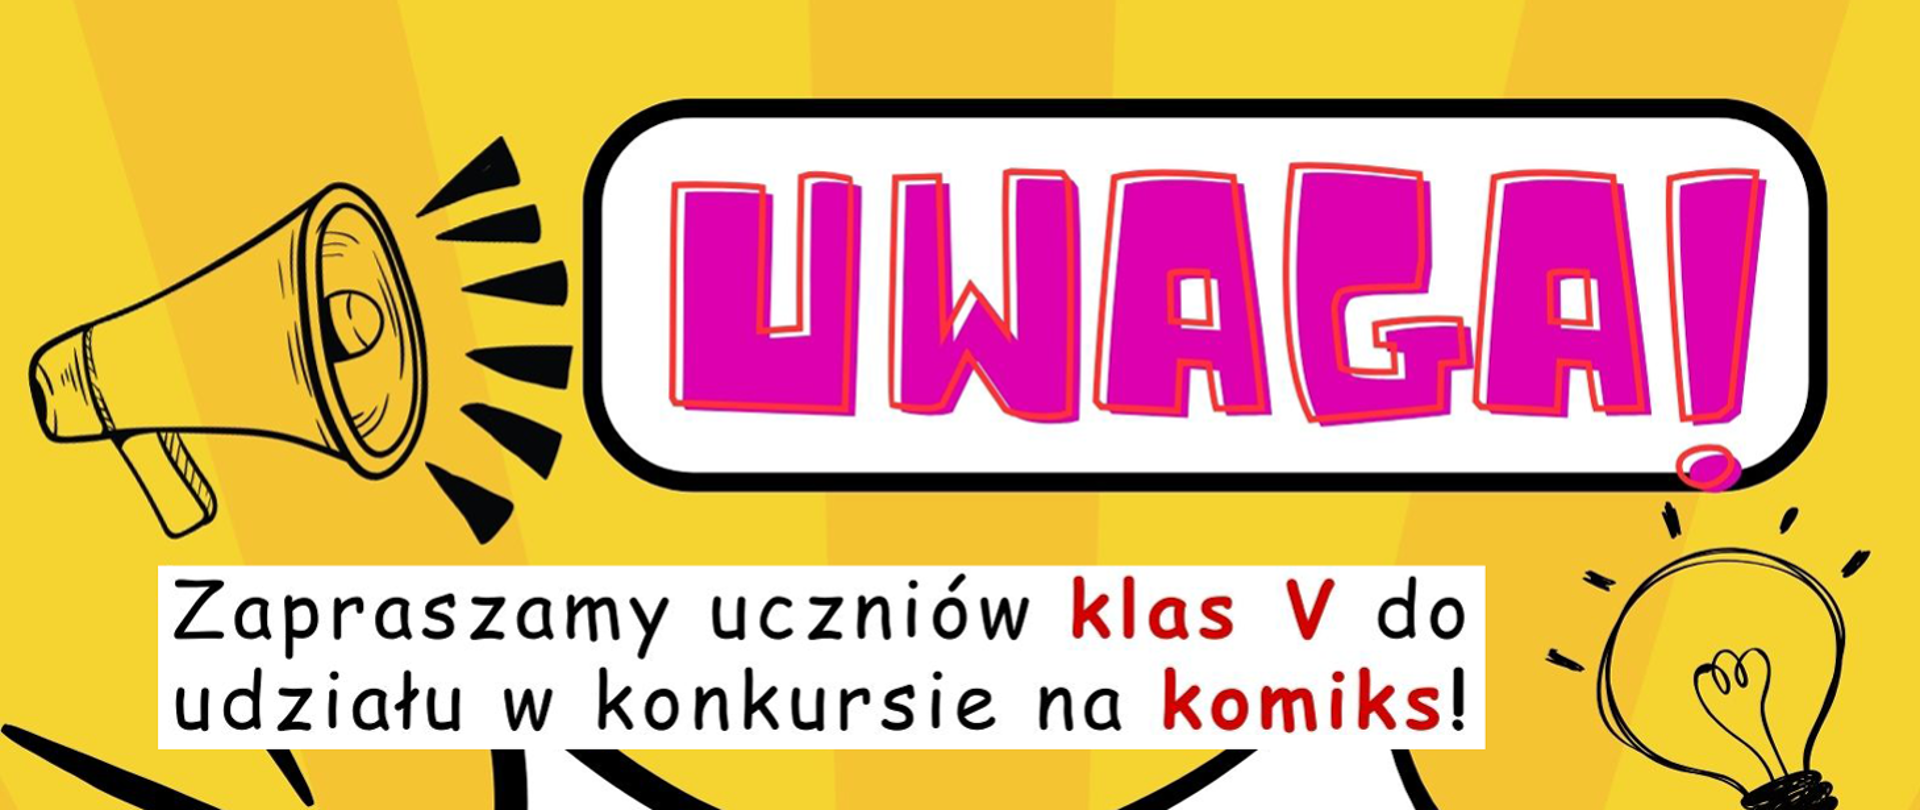 Baner z napisem UWAGA! Zapraszamy uczniów klas V do udziału w konkursie na komiks!